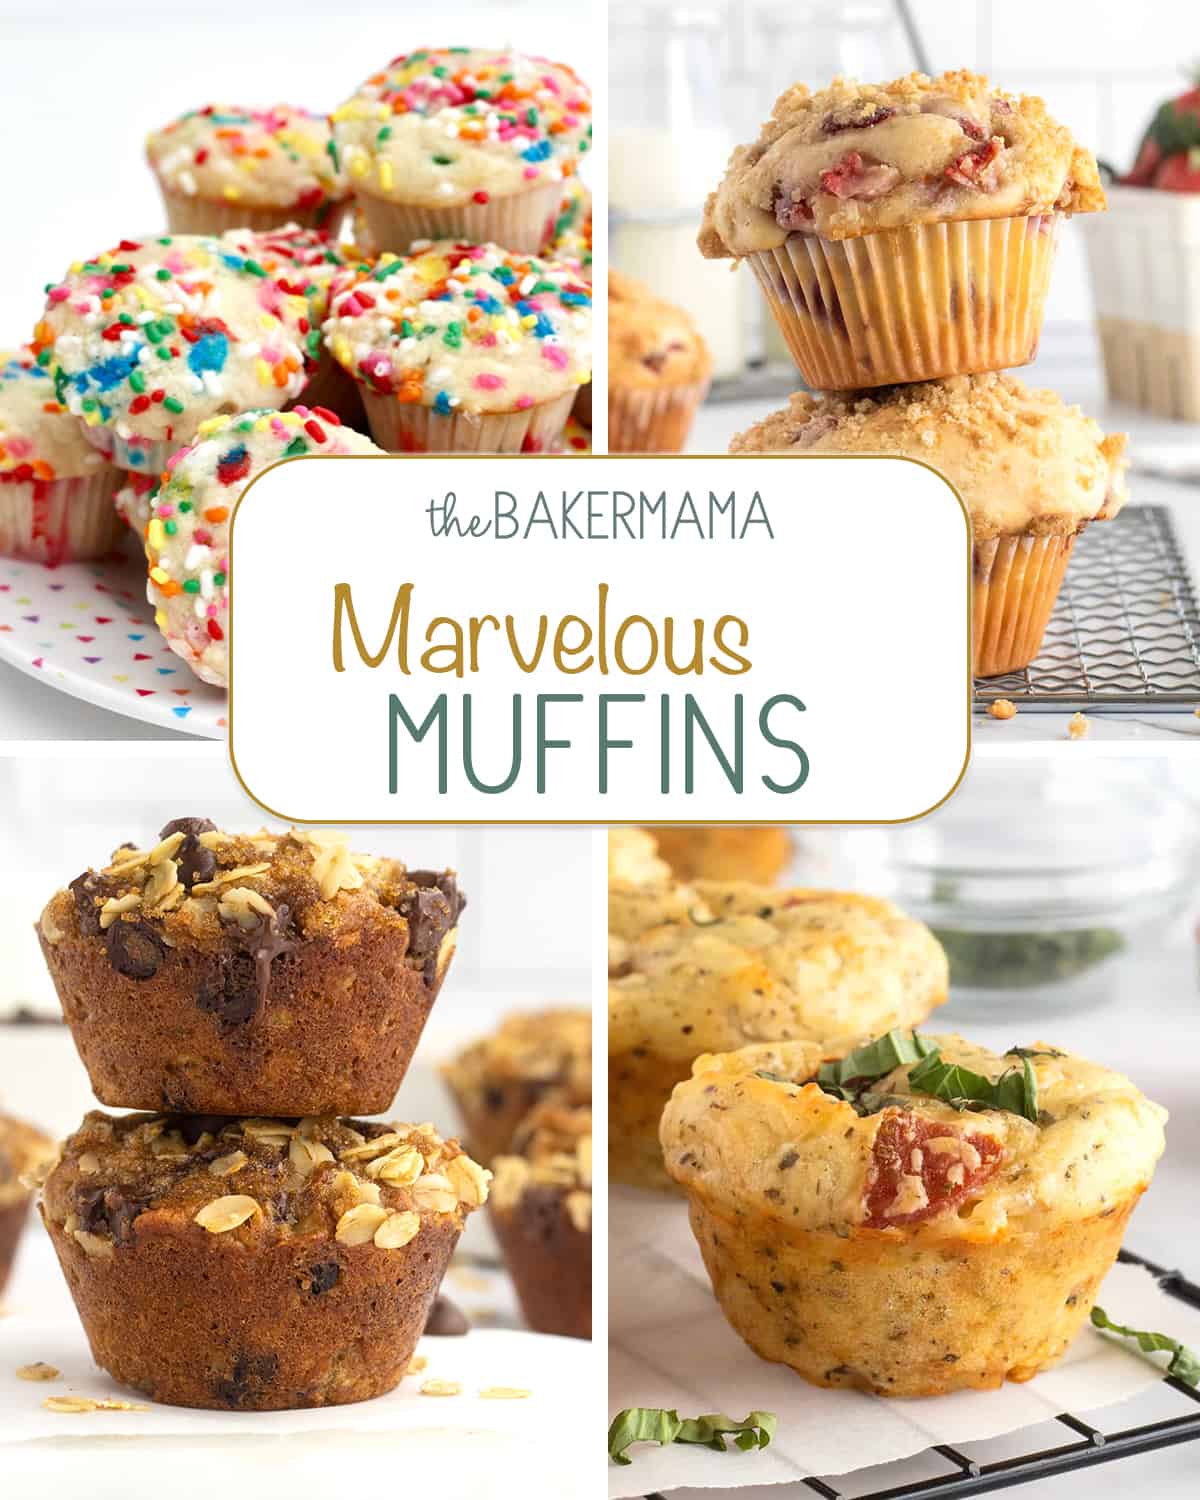 Muffin recipes